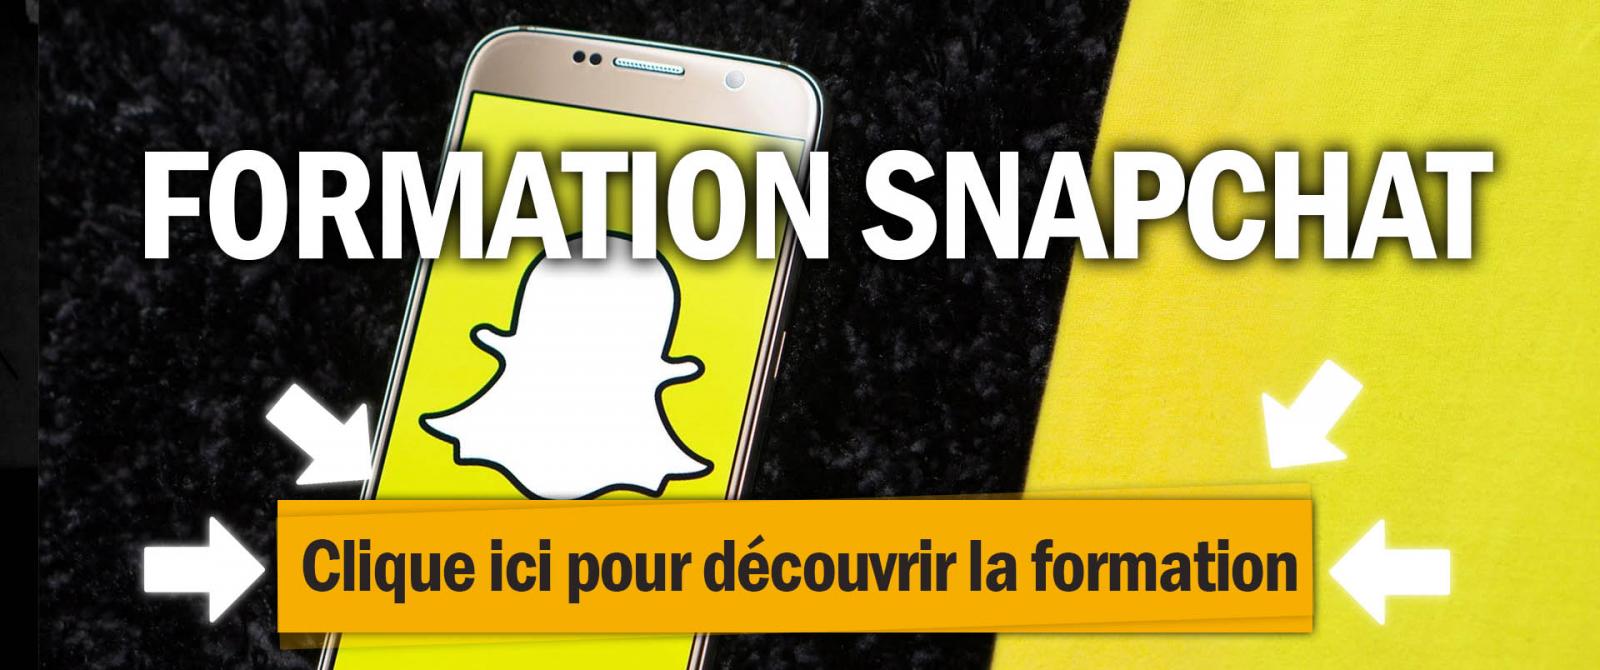 Formation snapchat ads pour faire de la publicité sur Snapchat avec le logo de snapchat et une couleur jaune en fond.